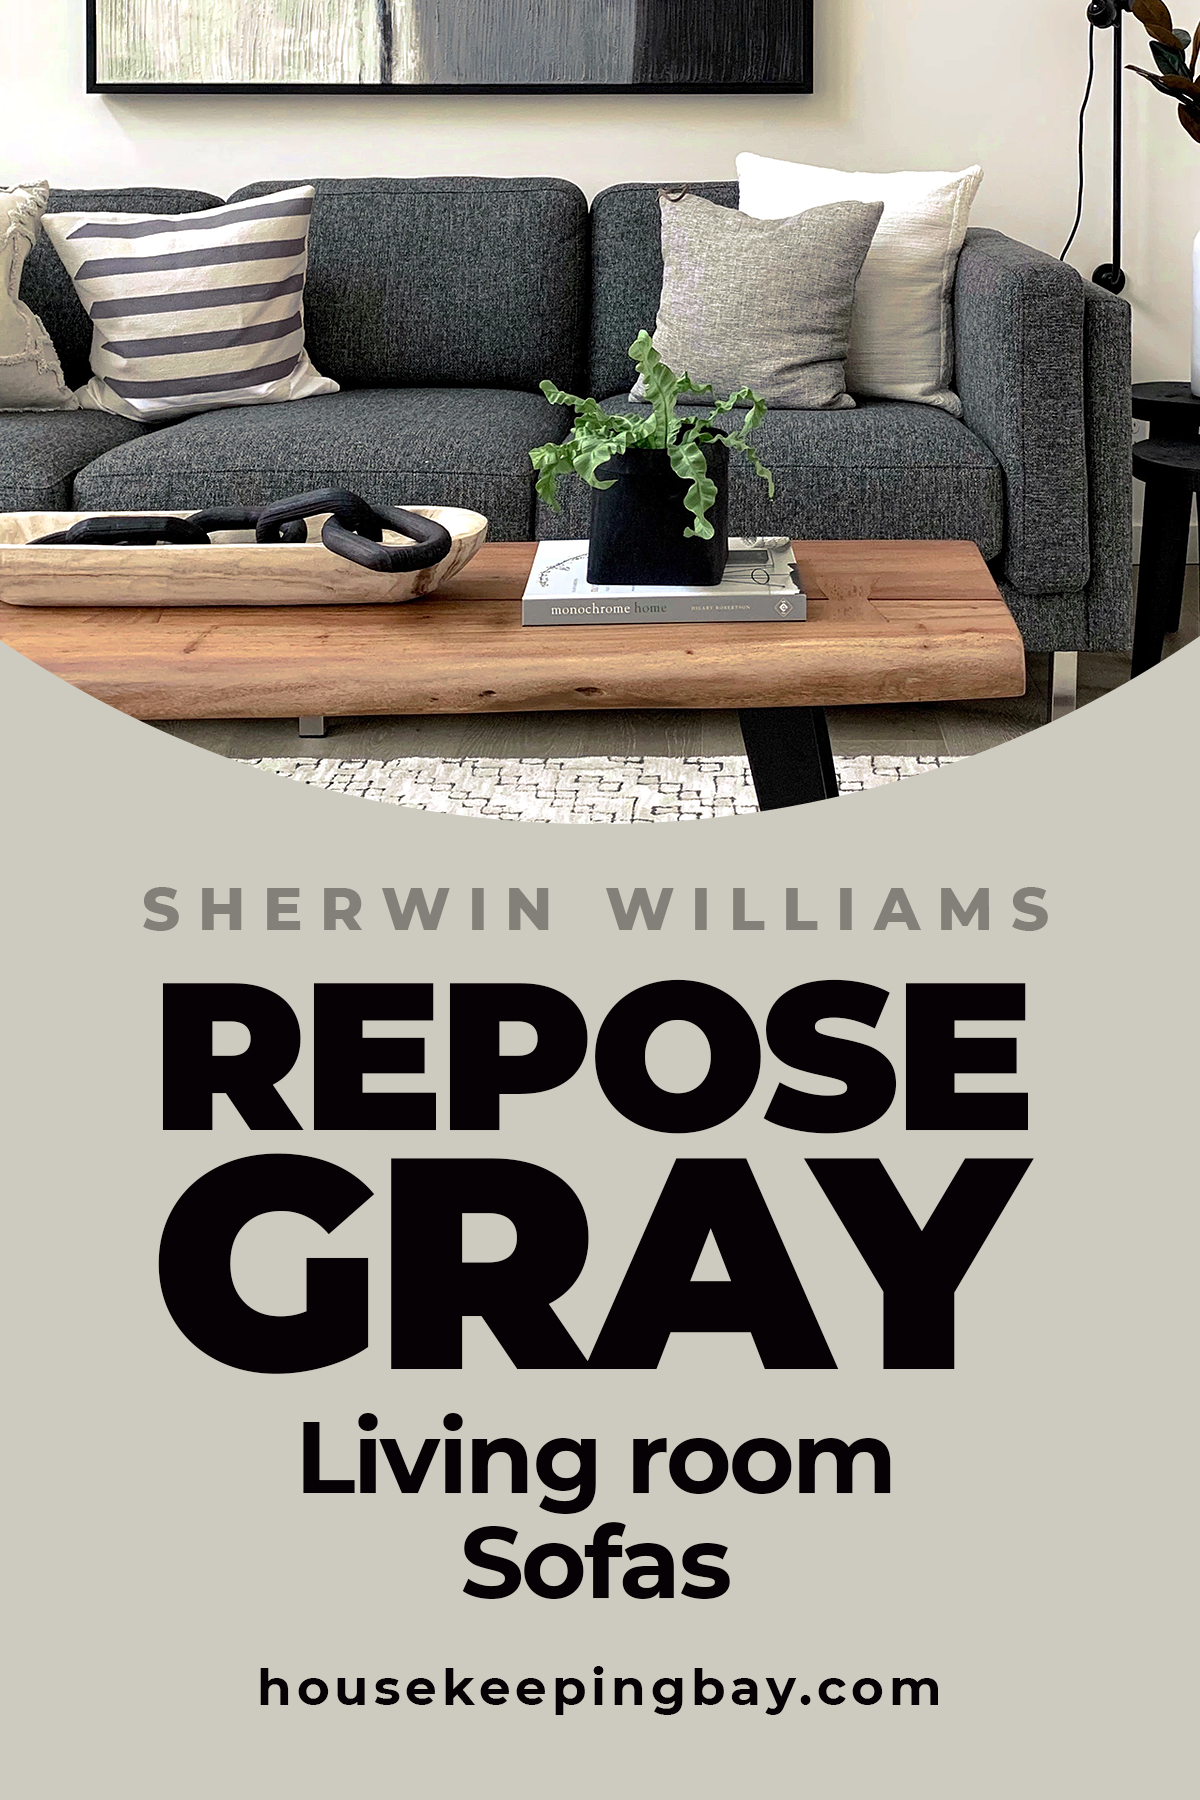 Repose Gray living room Sofas